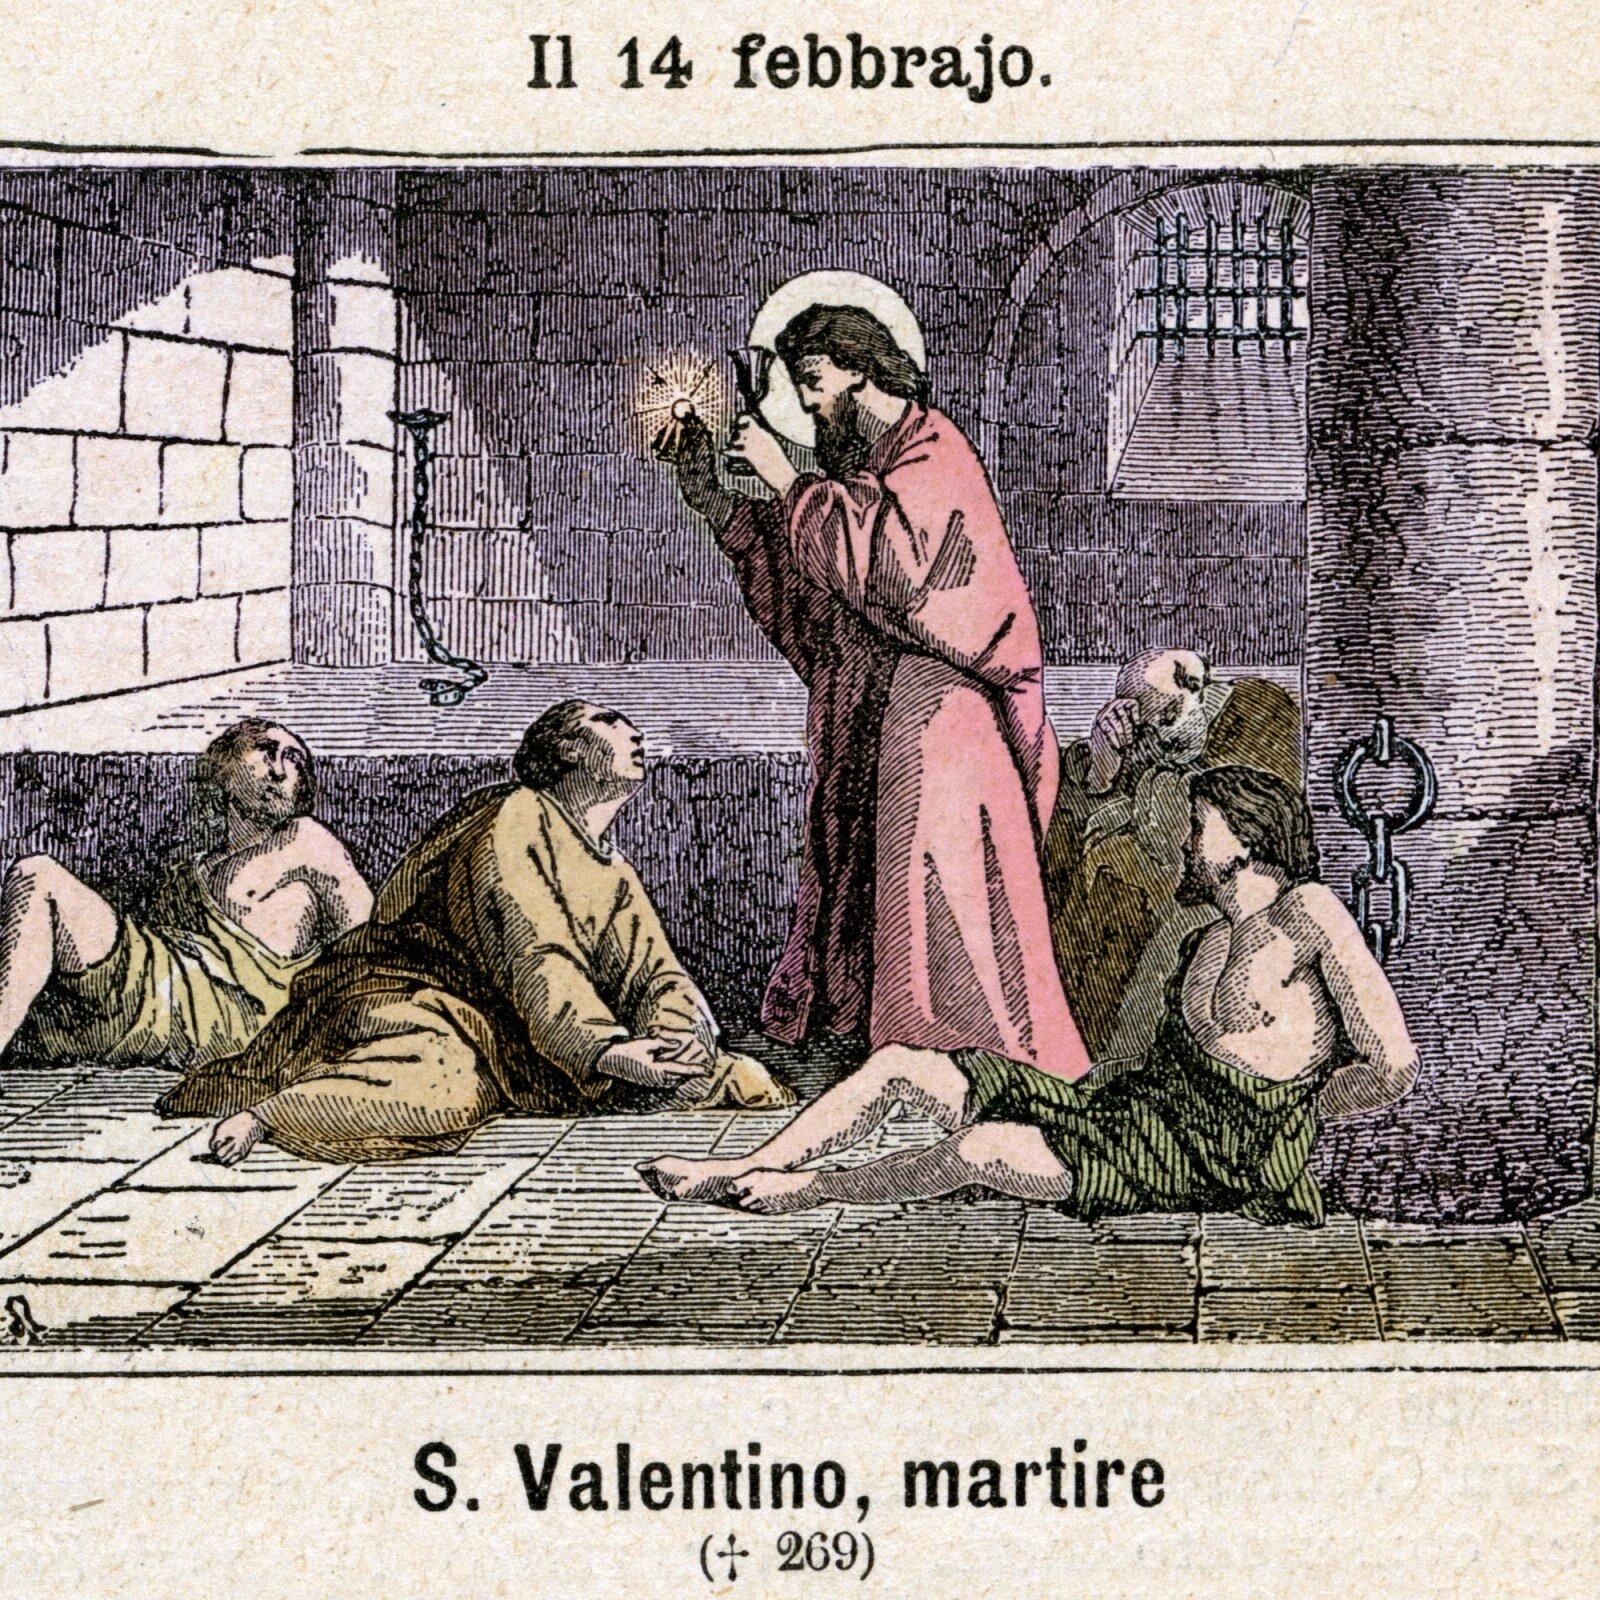 Thánh Valentine đại diện cho ngày lễ tình nhân. (Ảnh: Internet)